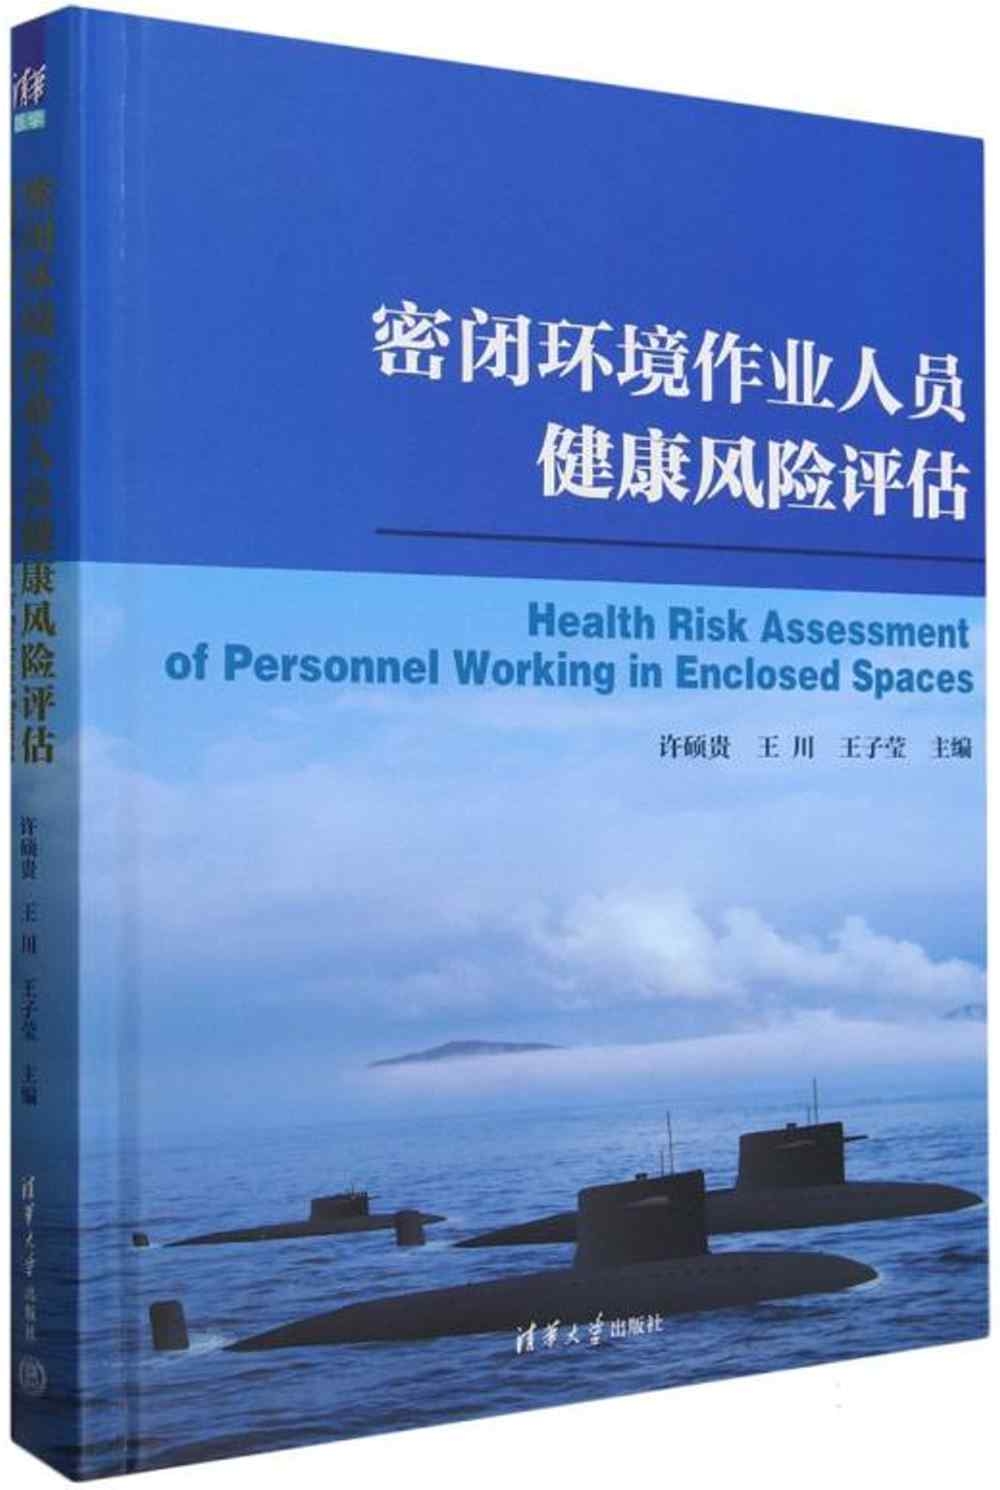 密閉環境作業人員健康風險評估